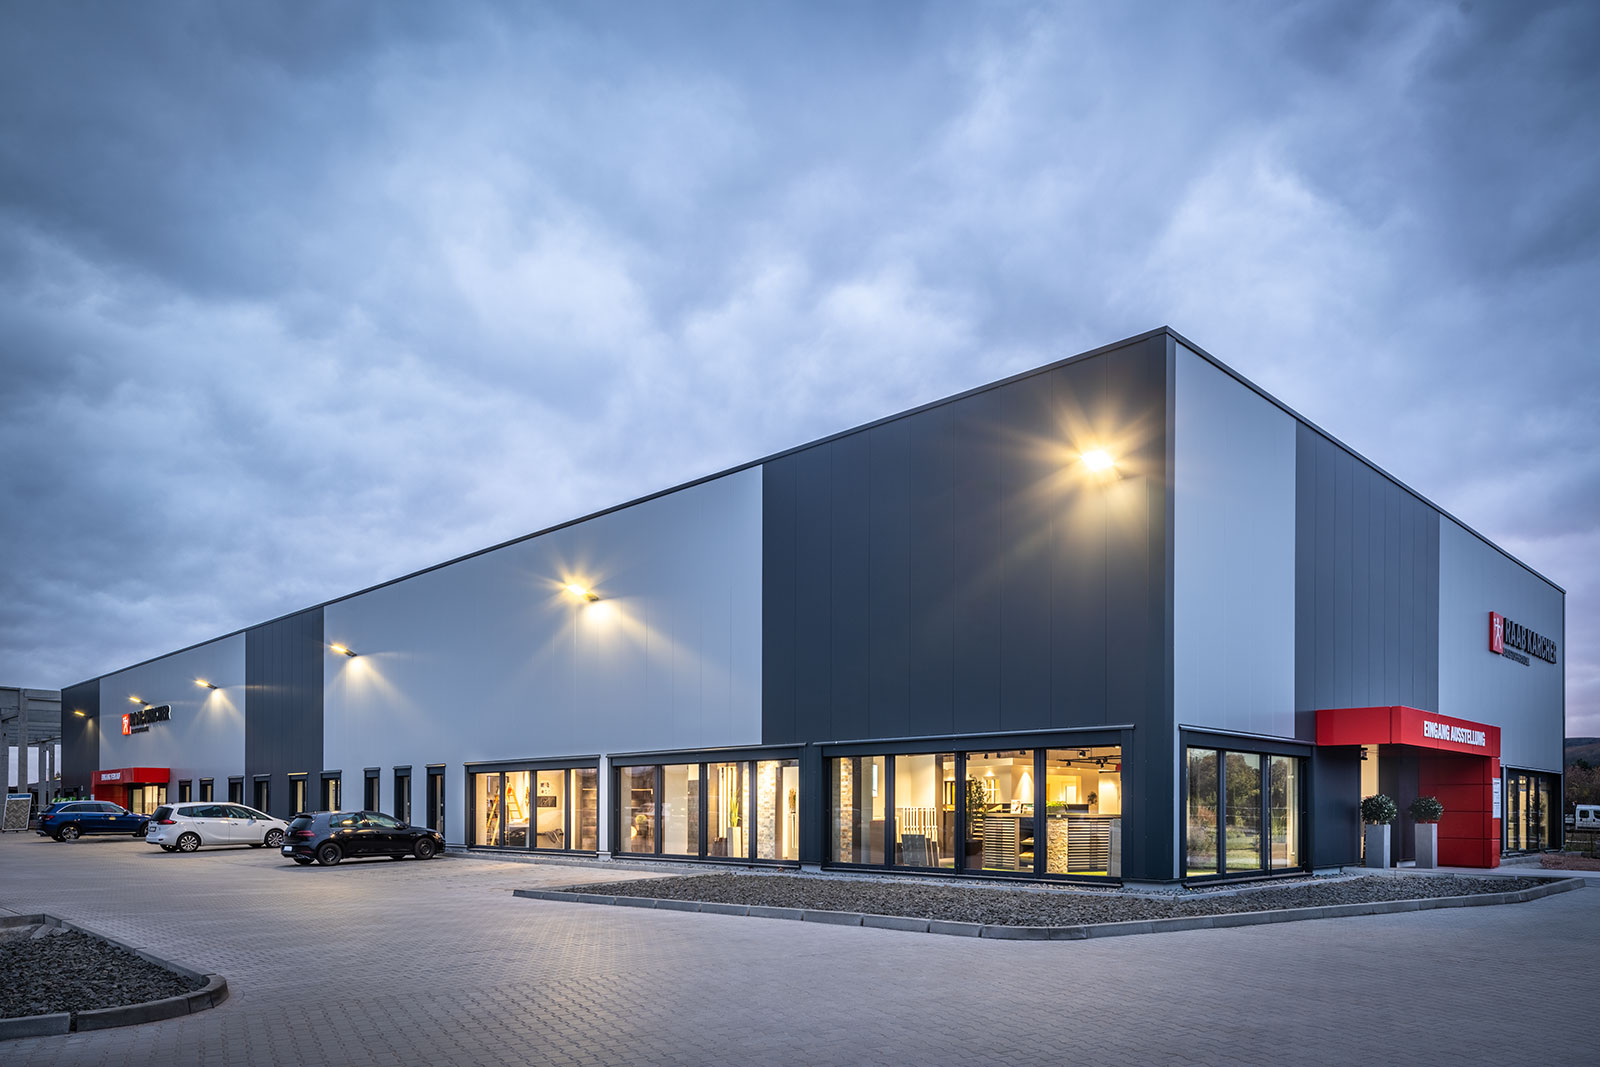 Profilbild vom Raab Karcher Baustoffhandel in Bingen. Zu sehen ist das Gebäude des Standorts.